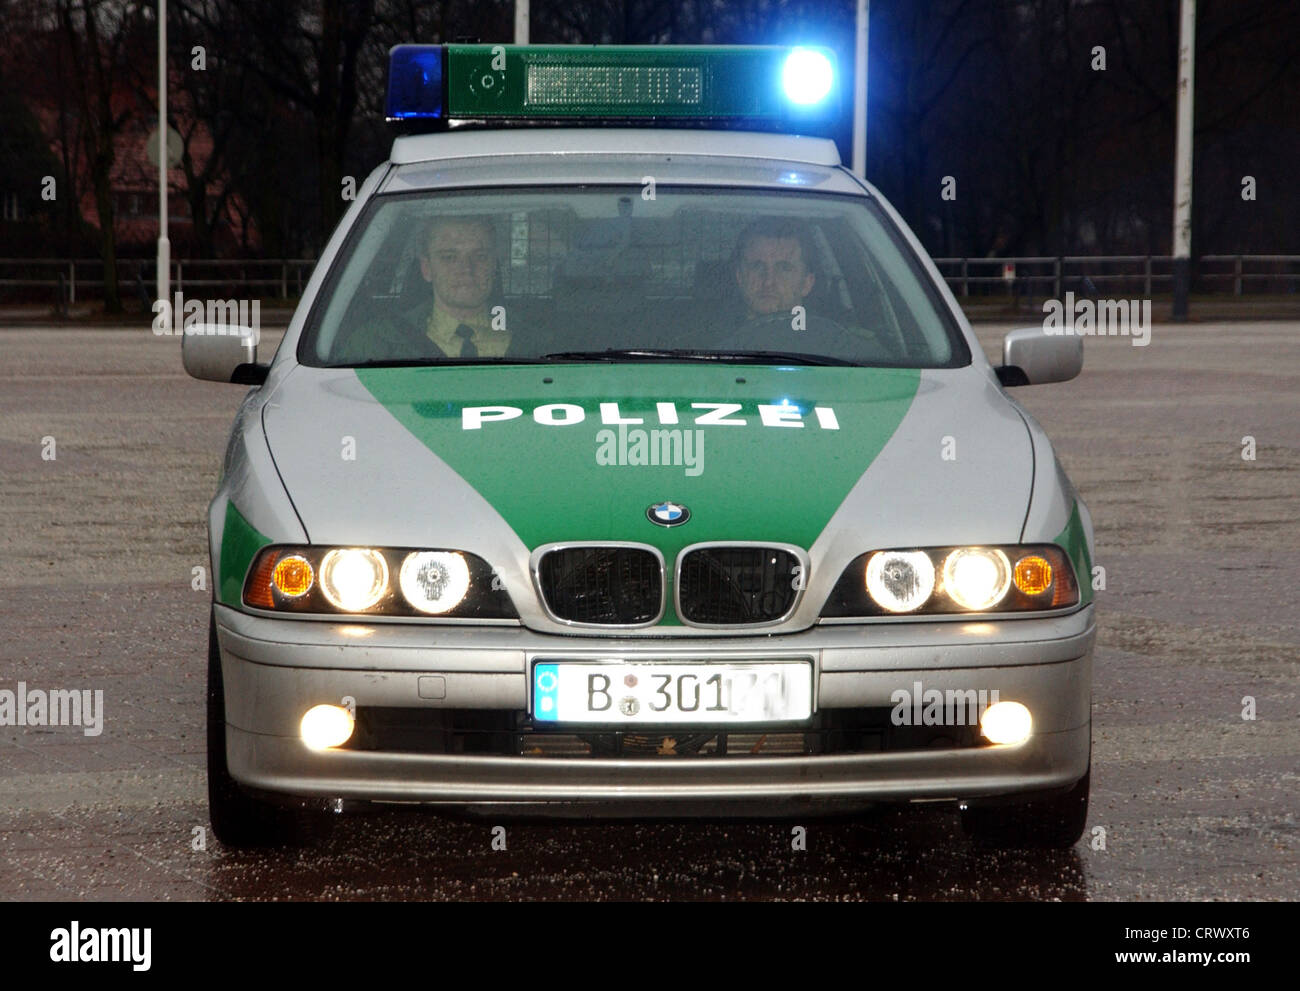 Police patrol in Berlin Stock Photo